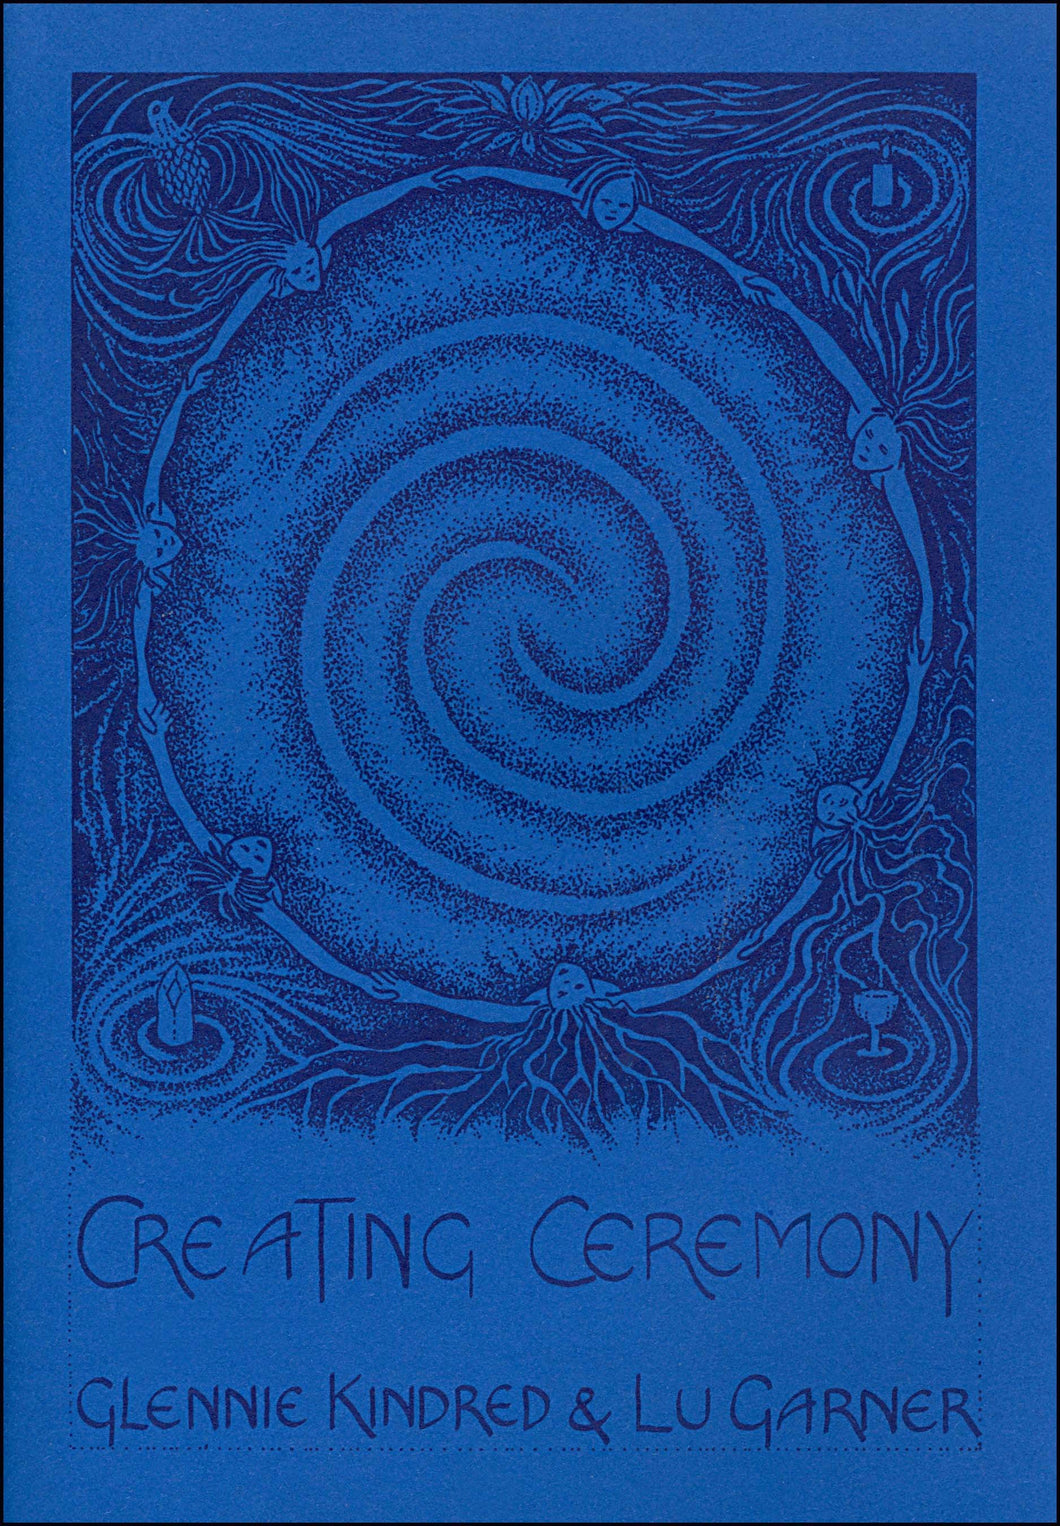 Glennie Kindred Lu Garner creating ceremony handmade illustrated book for Modern Craft